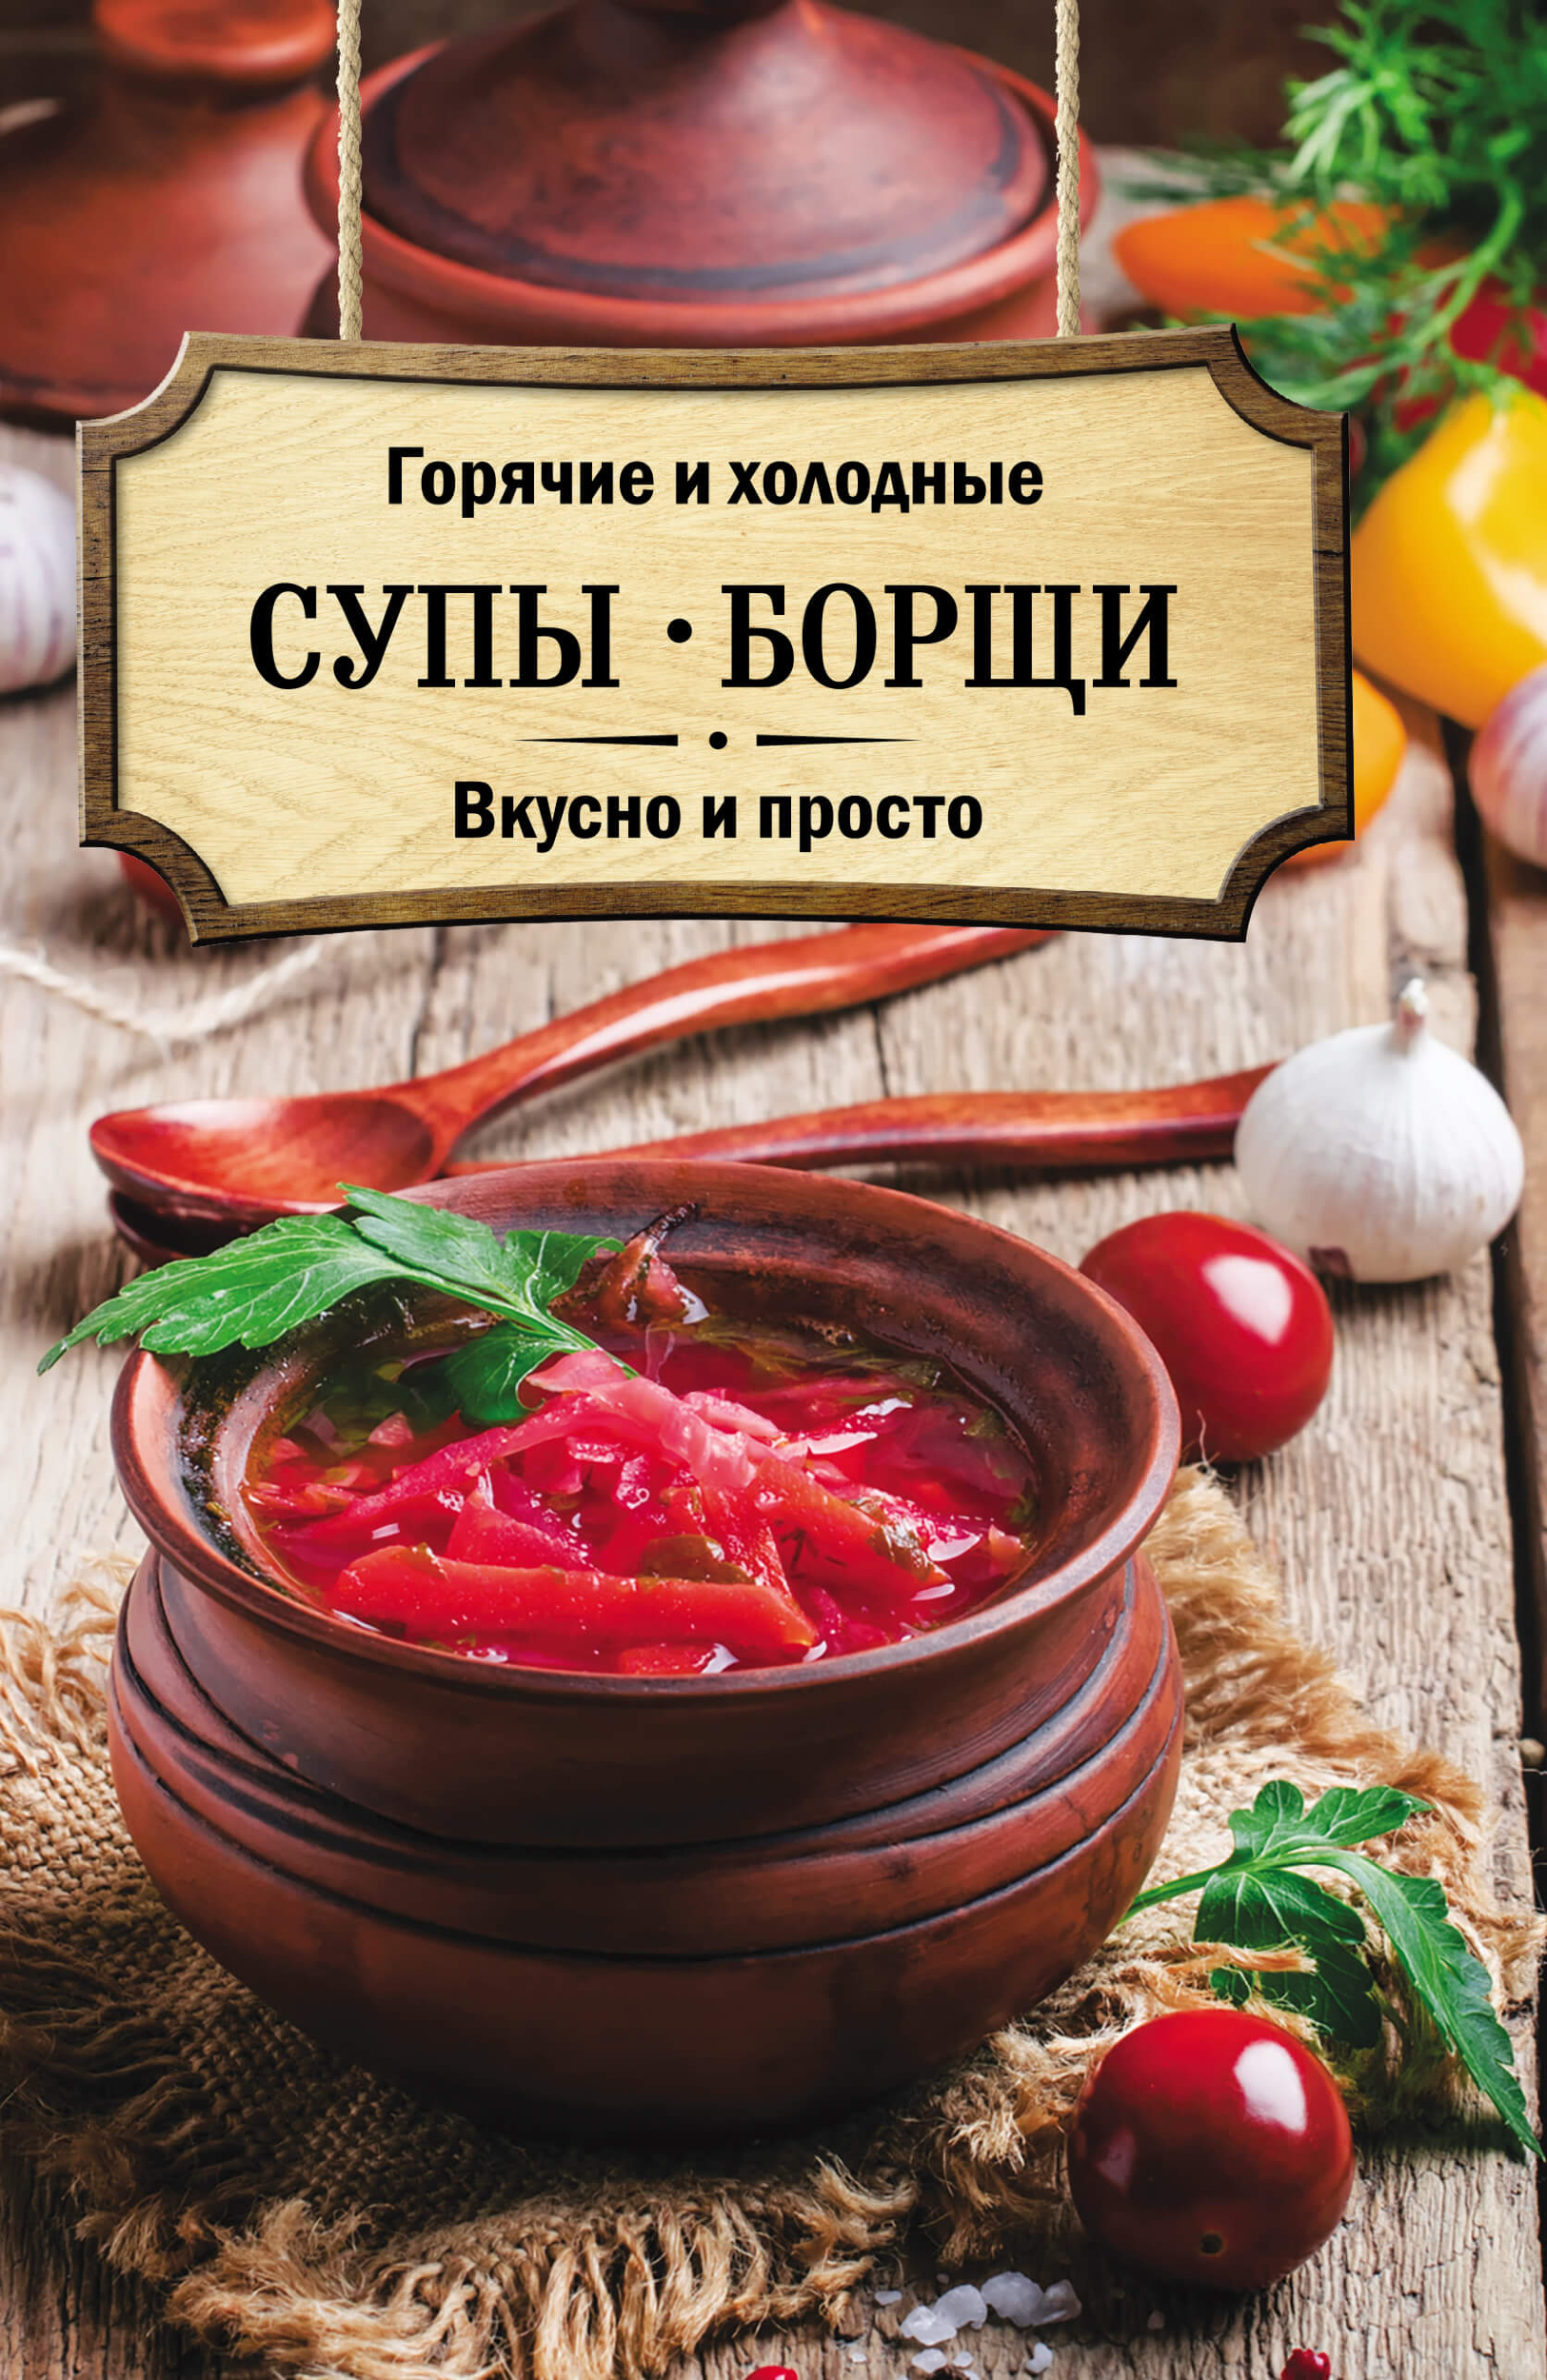 Горячие и холодные супы, борщи. Вкусно и просто. Автор — О. Кузьмина. 